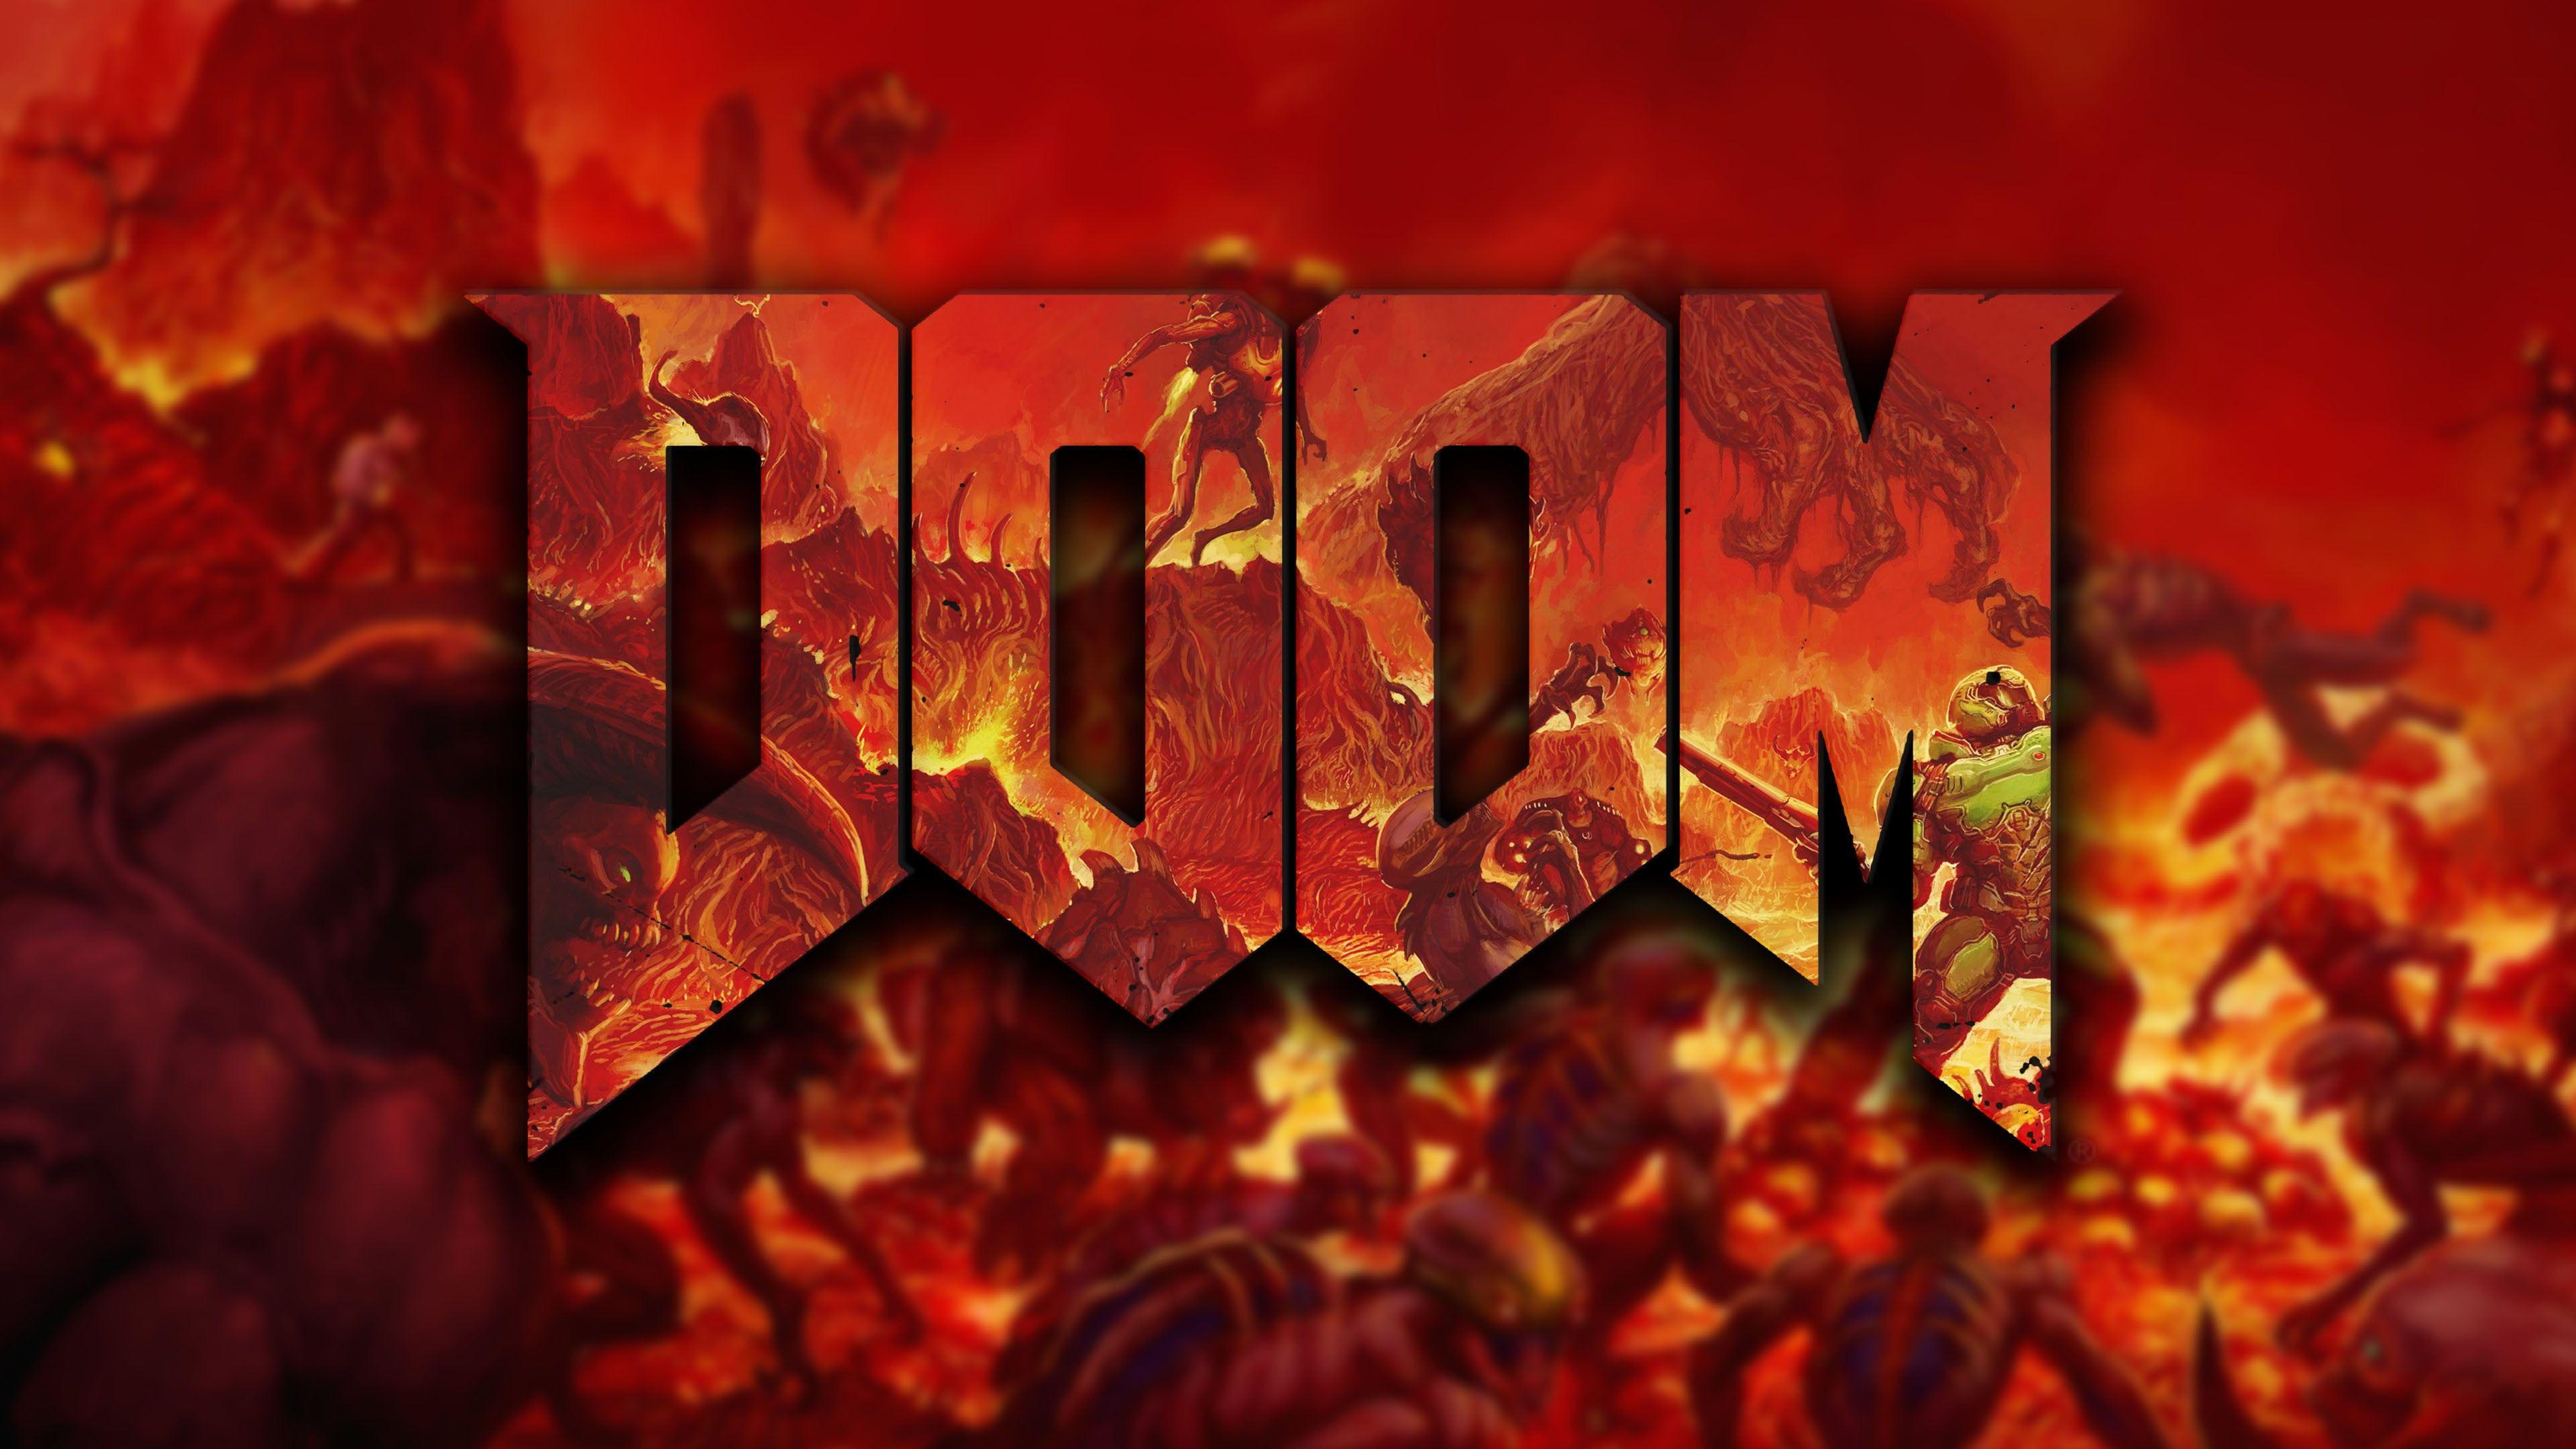 Hình nền Doom 3840x2160, trò chơi điện tử, Doom (trò chơi) hình nền HD.  Hình nền